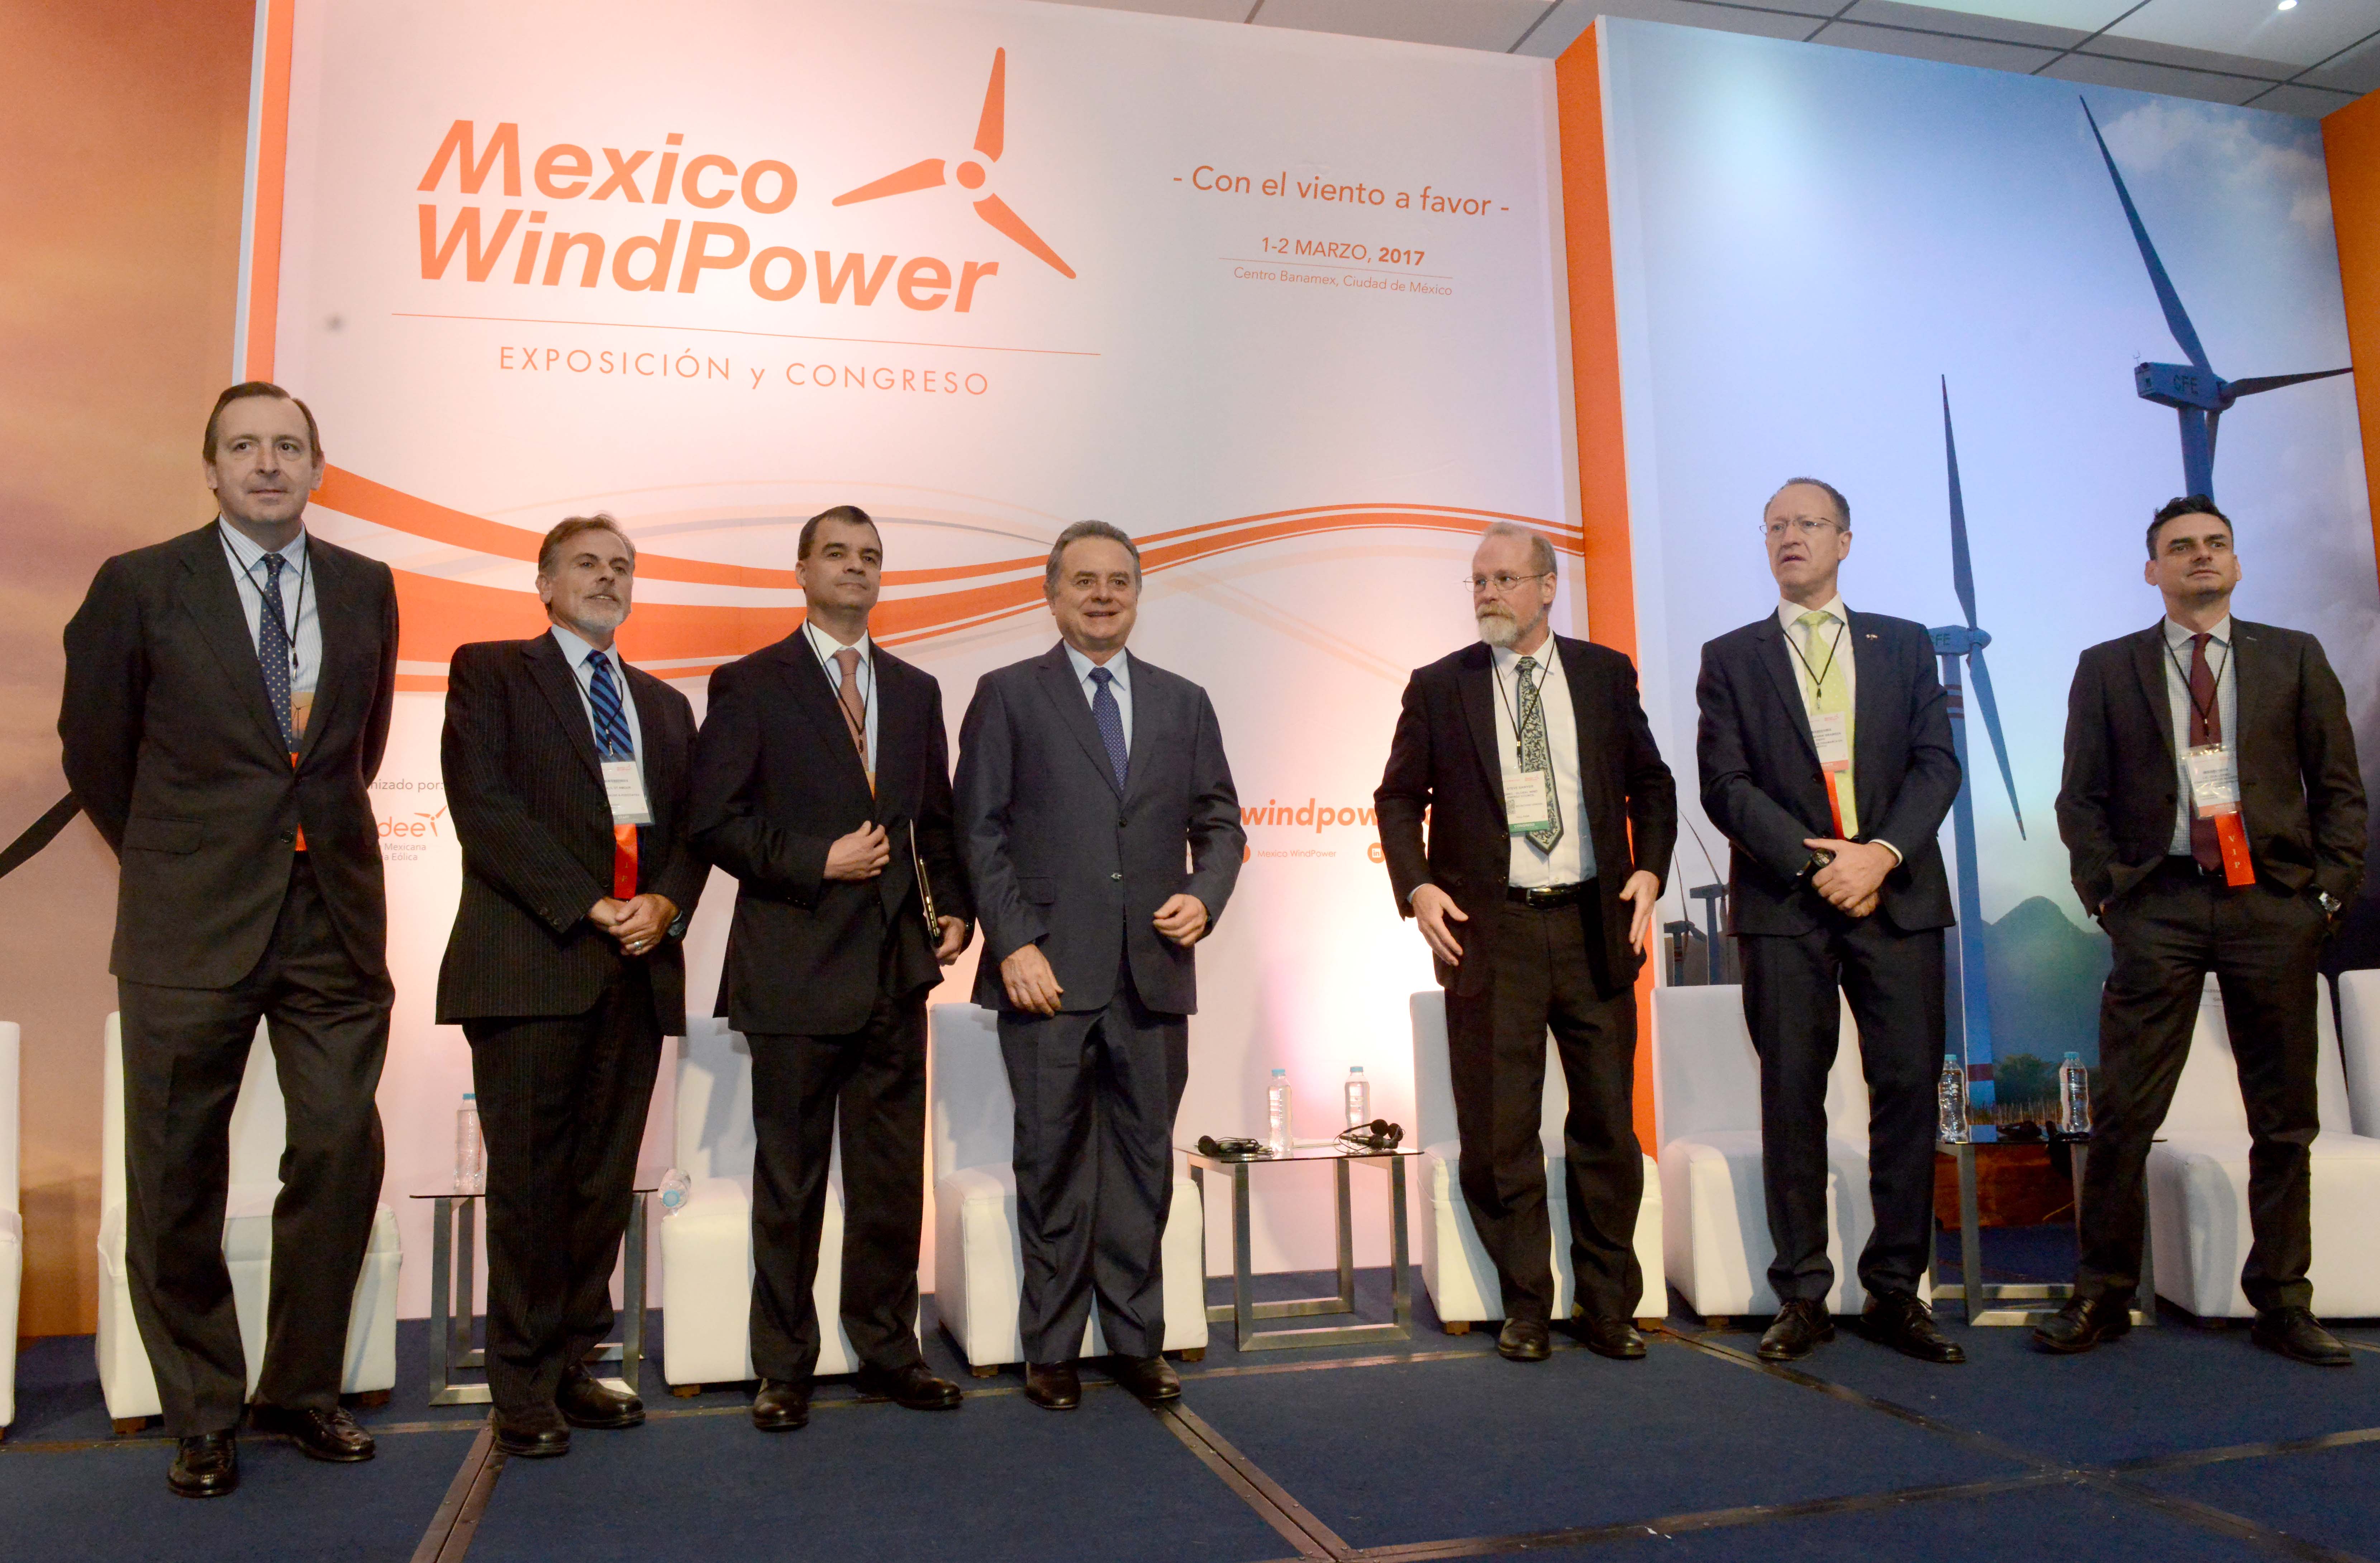 El Secretario Pedro Joaquín Coldwell inauguró el congreso Mexico WindPower: “Con el viento a favor”.